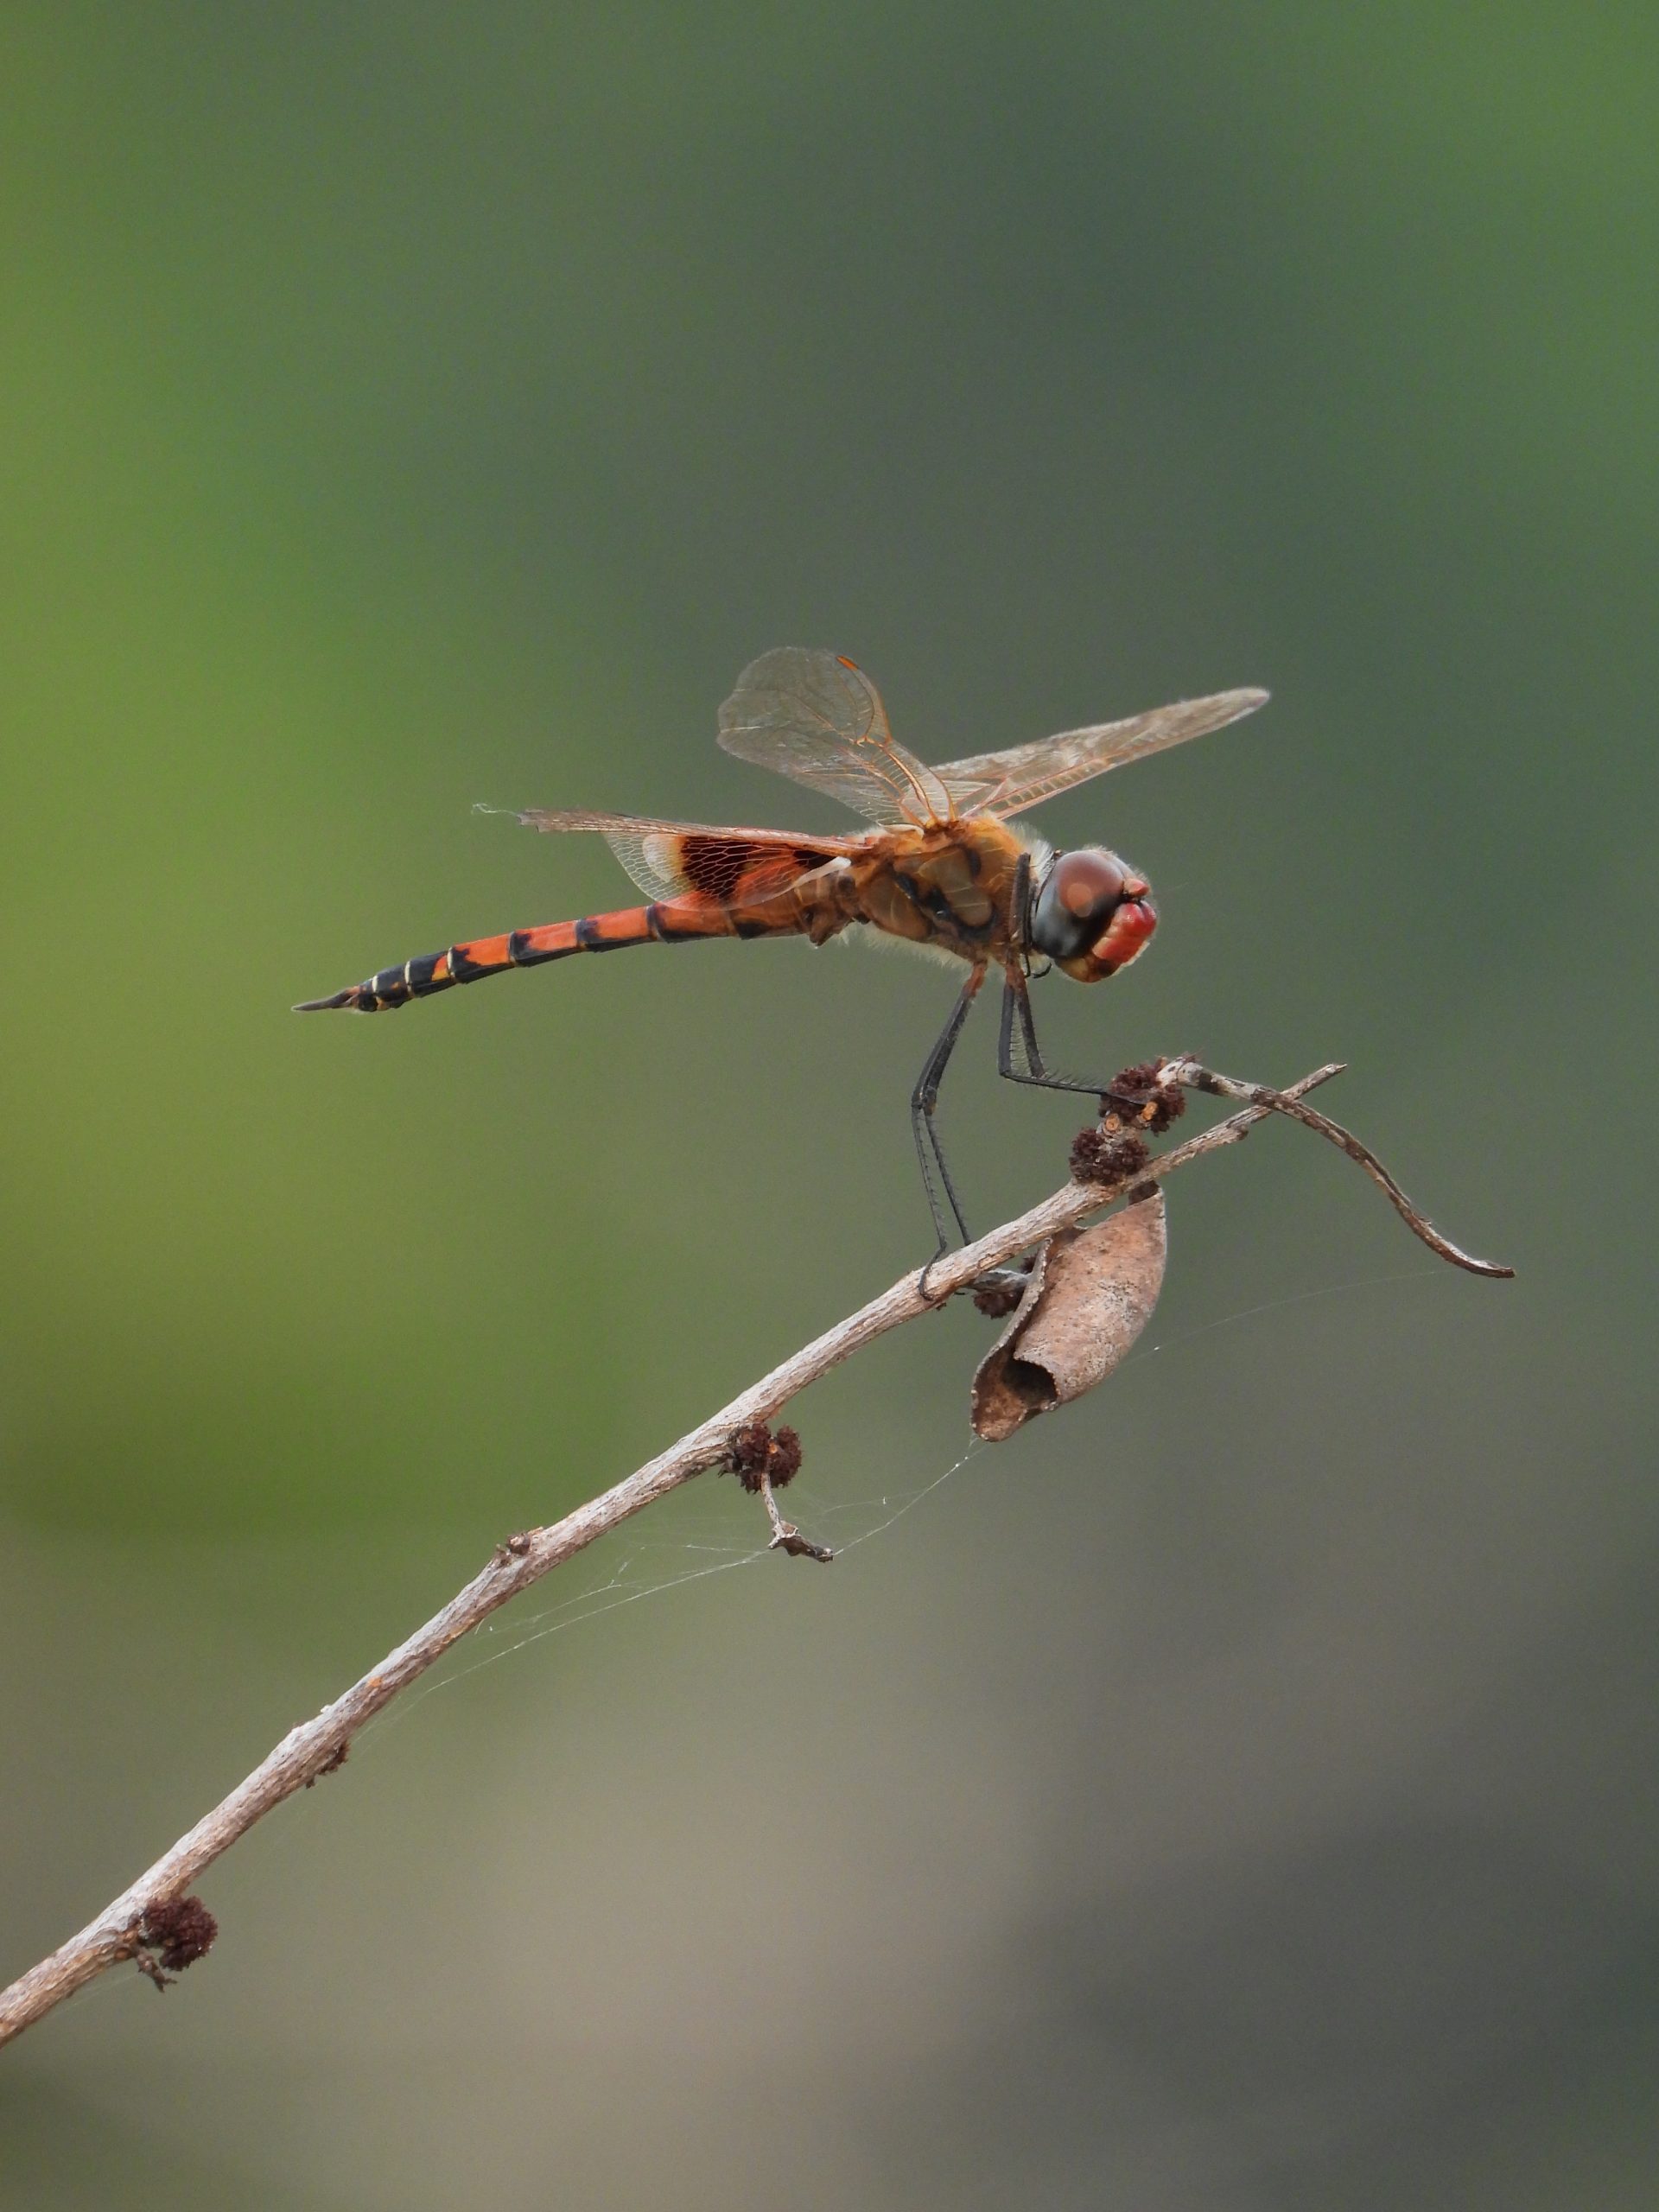 A dragonfly on a twig